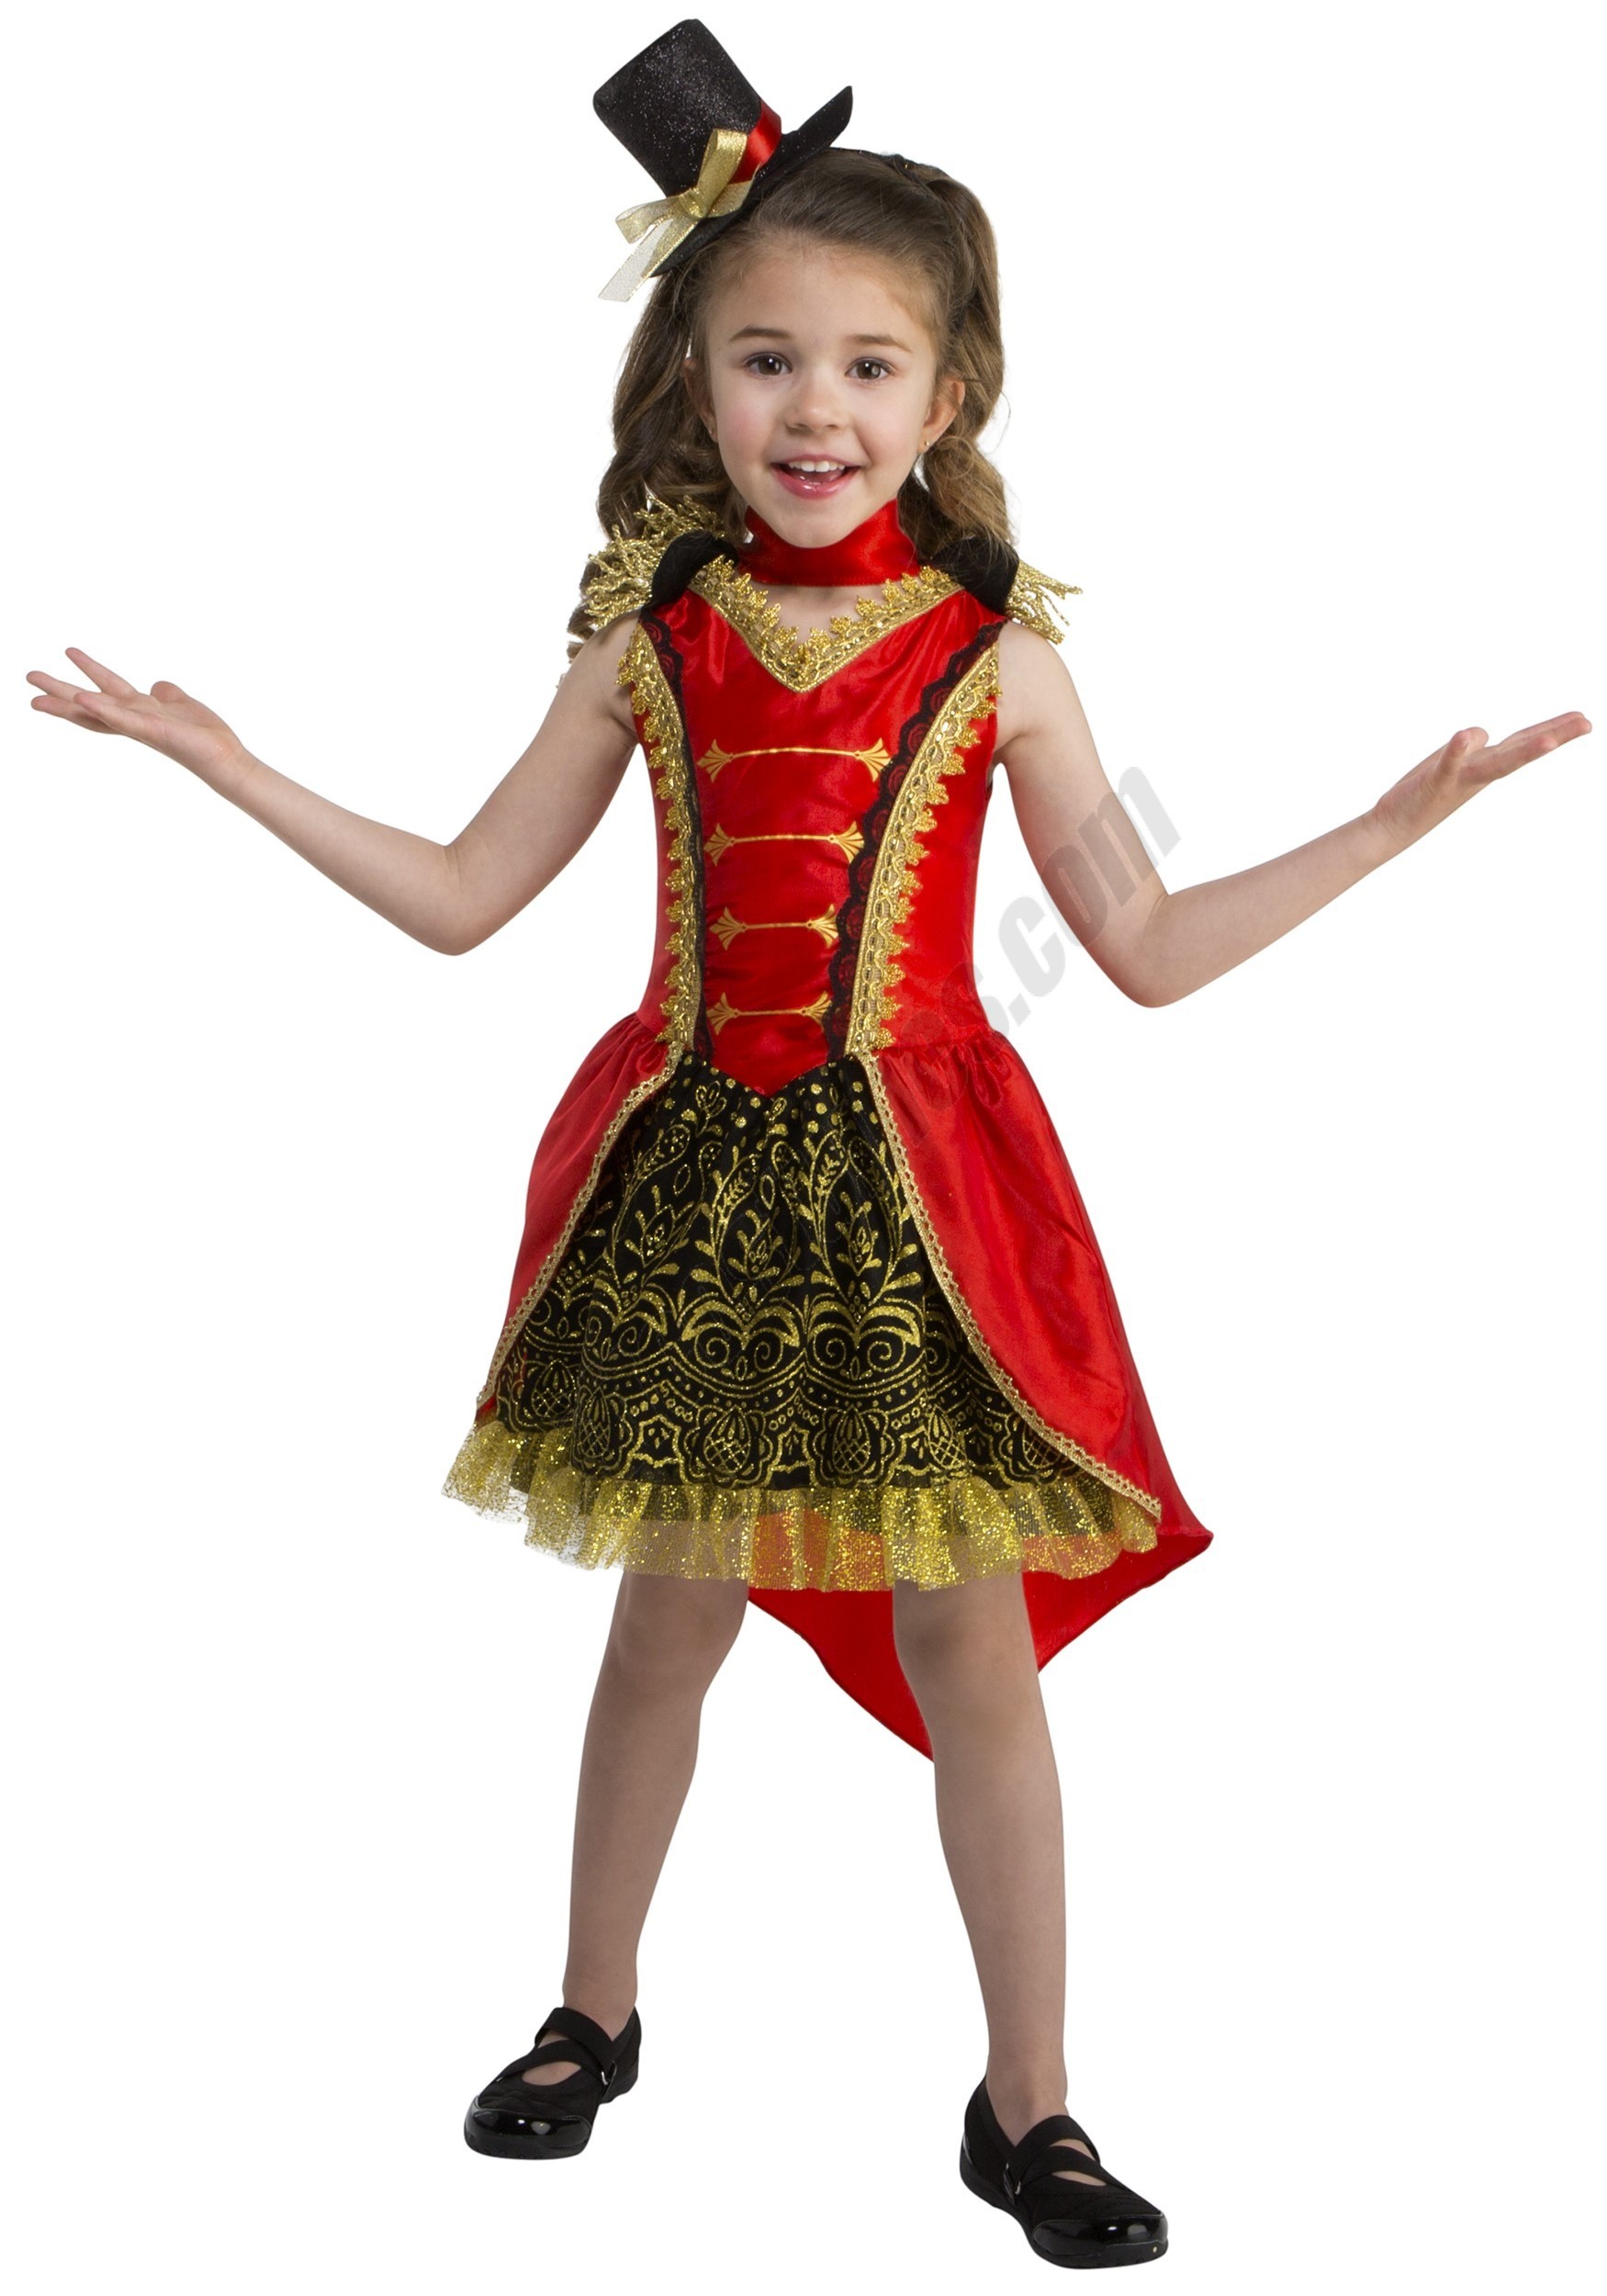 Toddler Circus Girl Ringmaster Costume Promotions - Toddler Circus Girl Ringmaster Costume Promotions